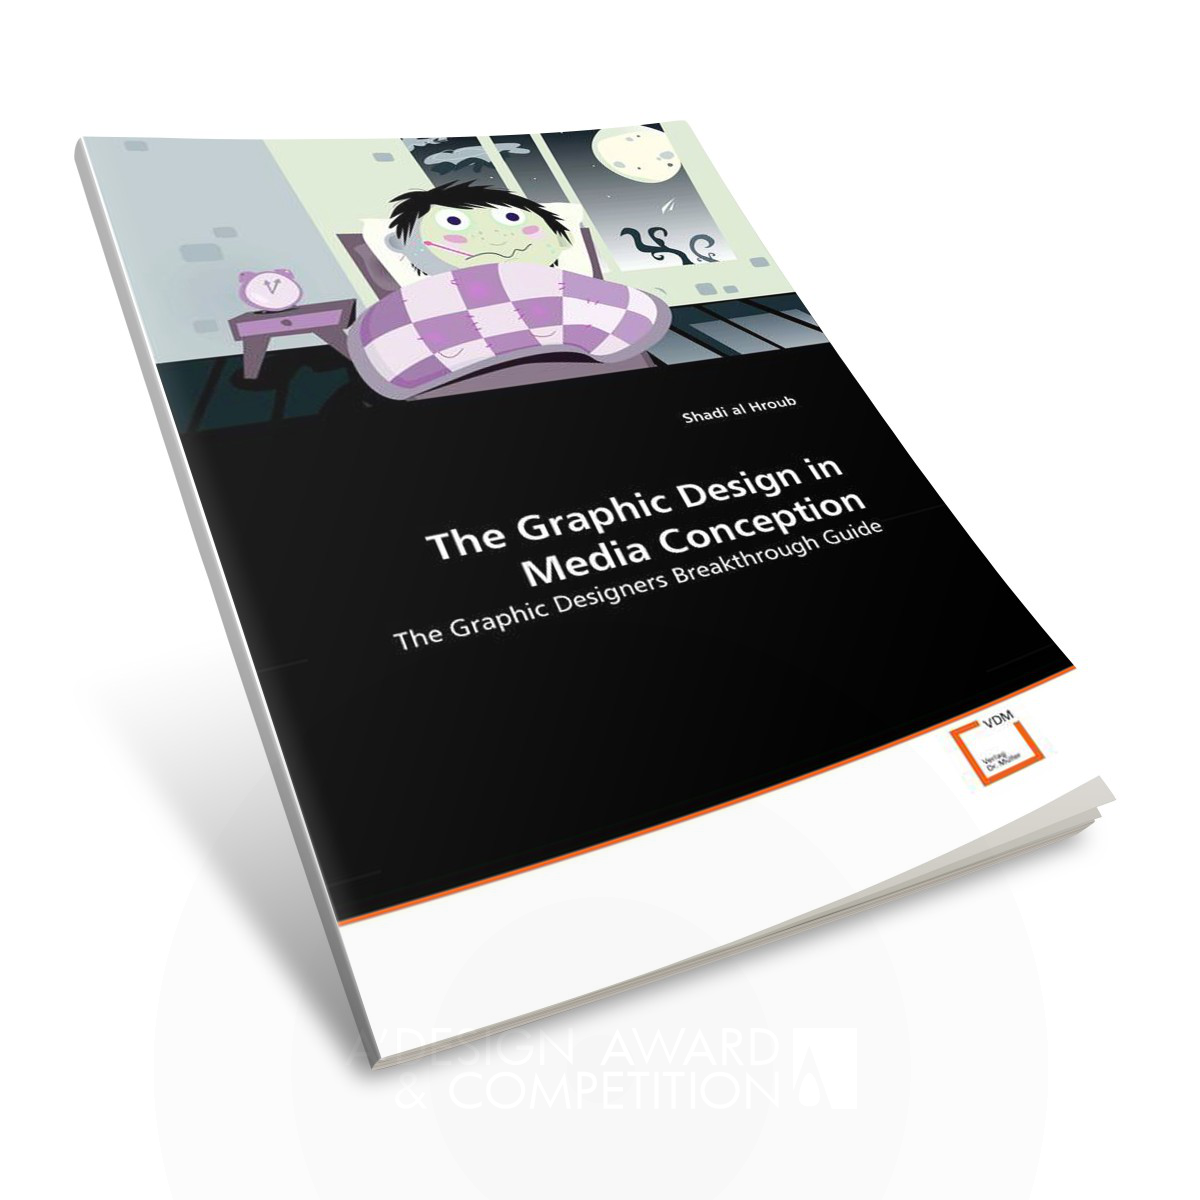 The Graphic Design in Media Conception Book Design by Shadi Al Hroub